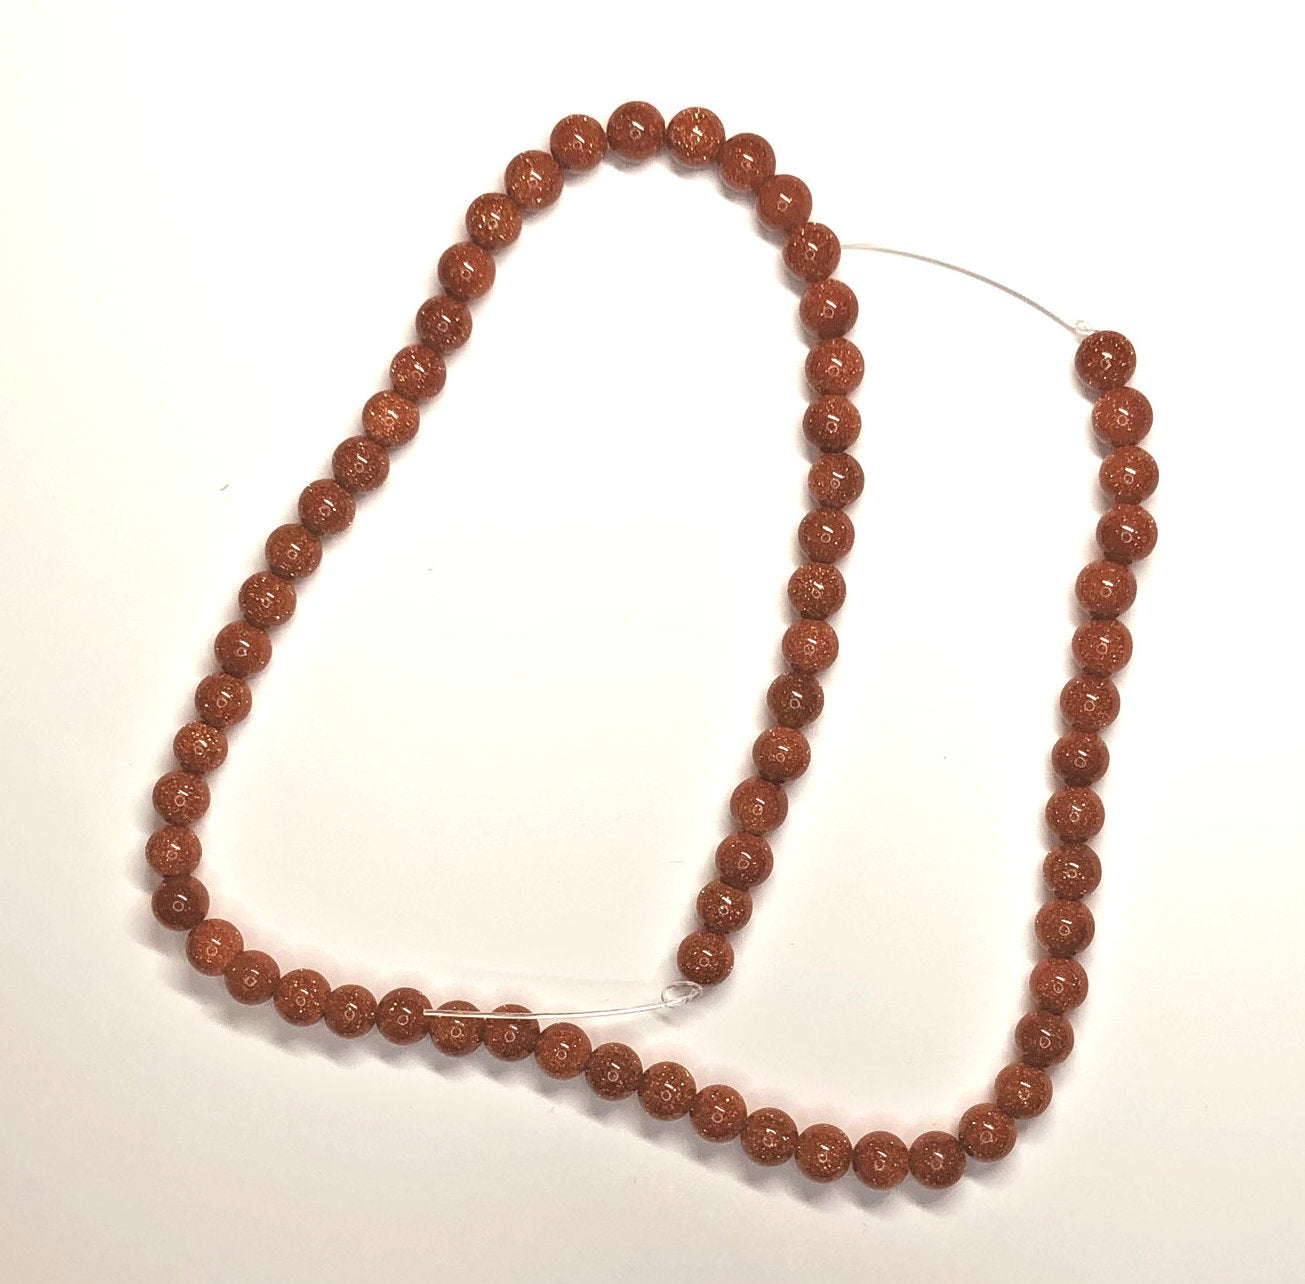 Goldstone Semi-Precious Round Beads, 6 mm - 65 Beads